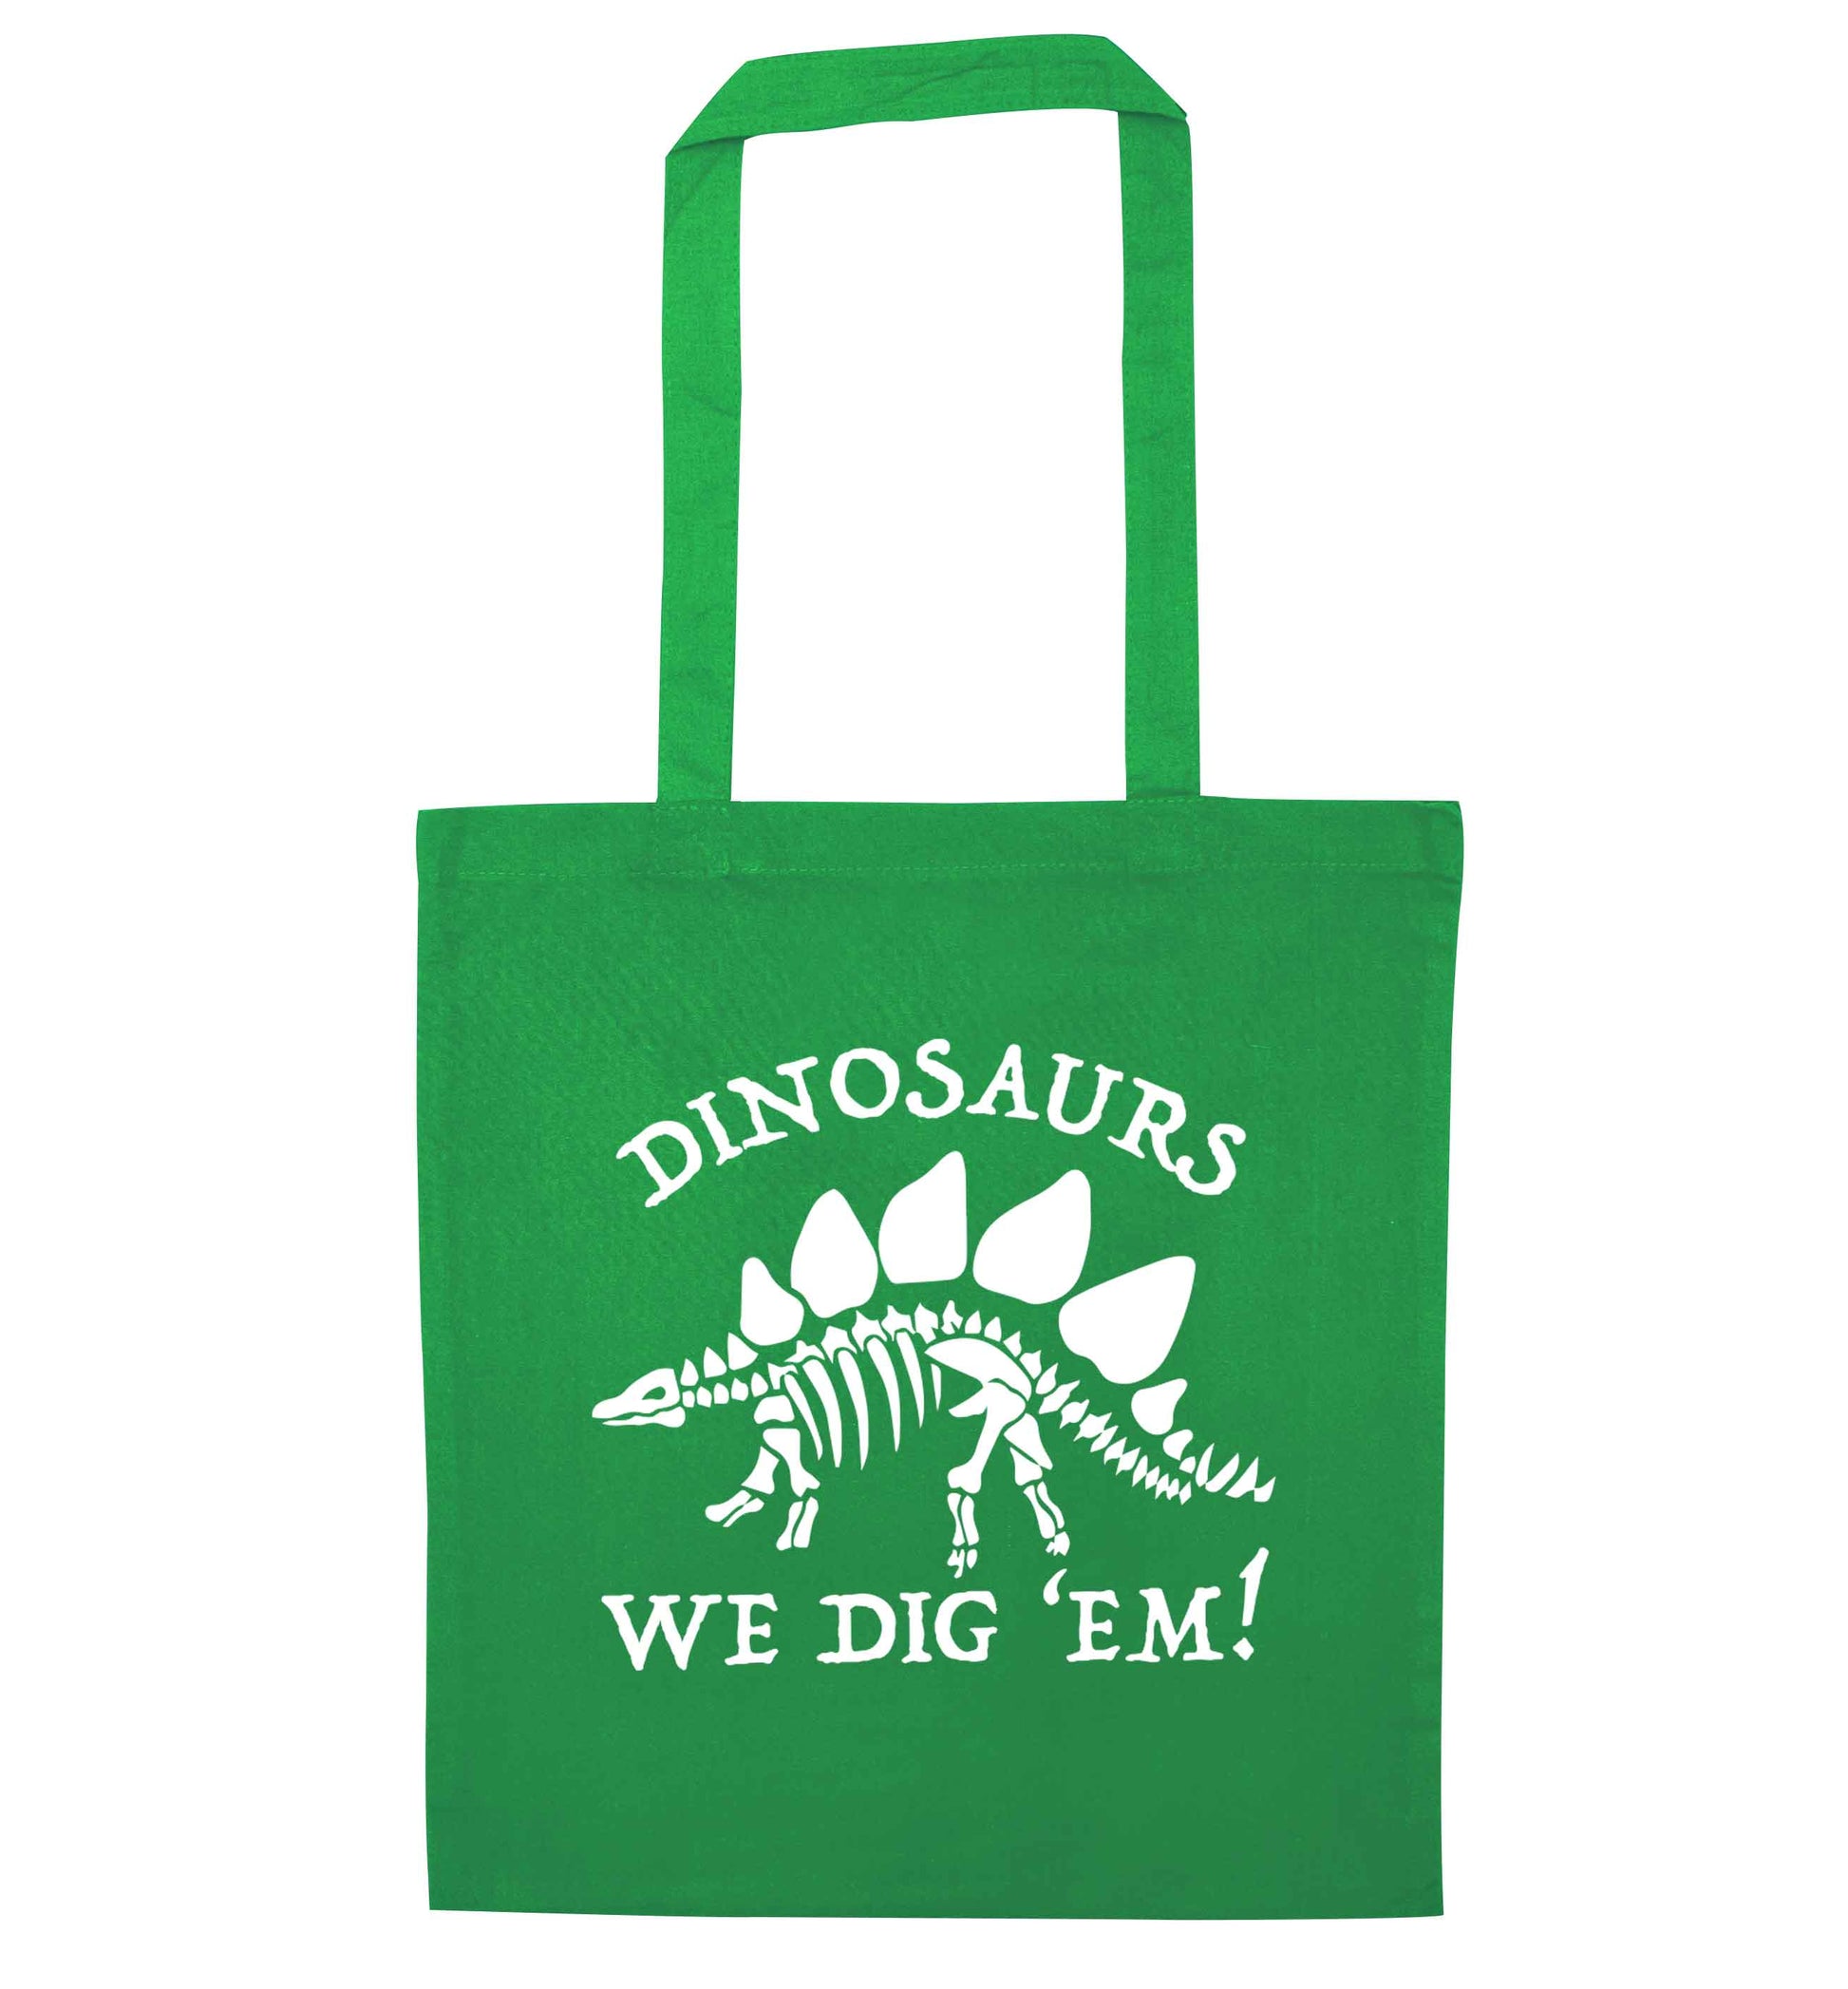 Dinosaurs we dig 'em! green tote bag